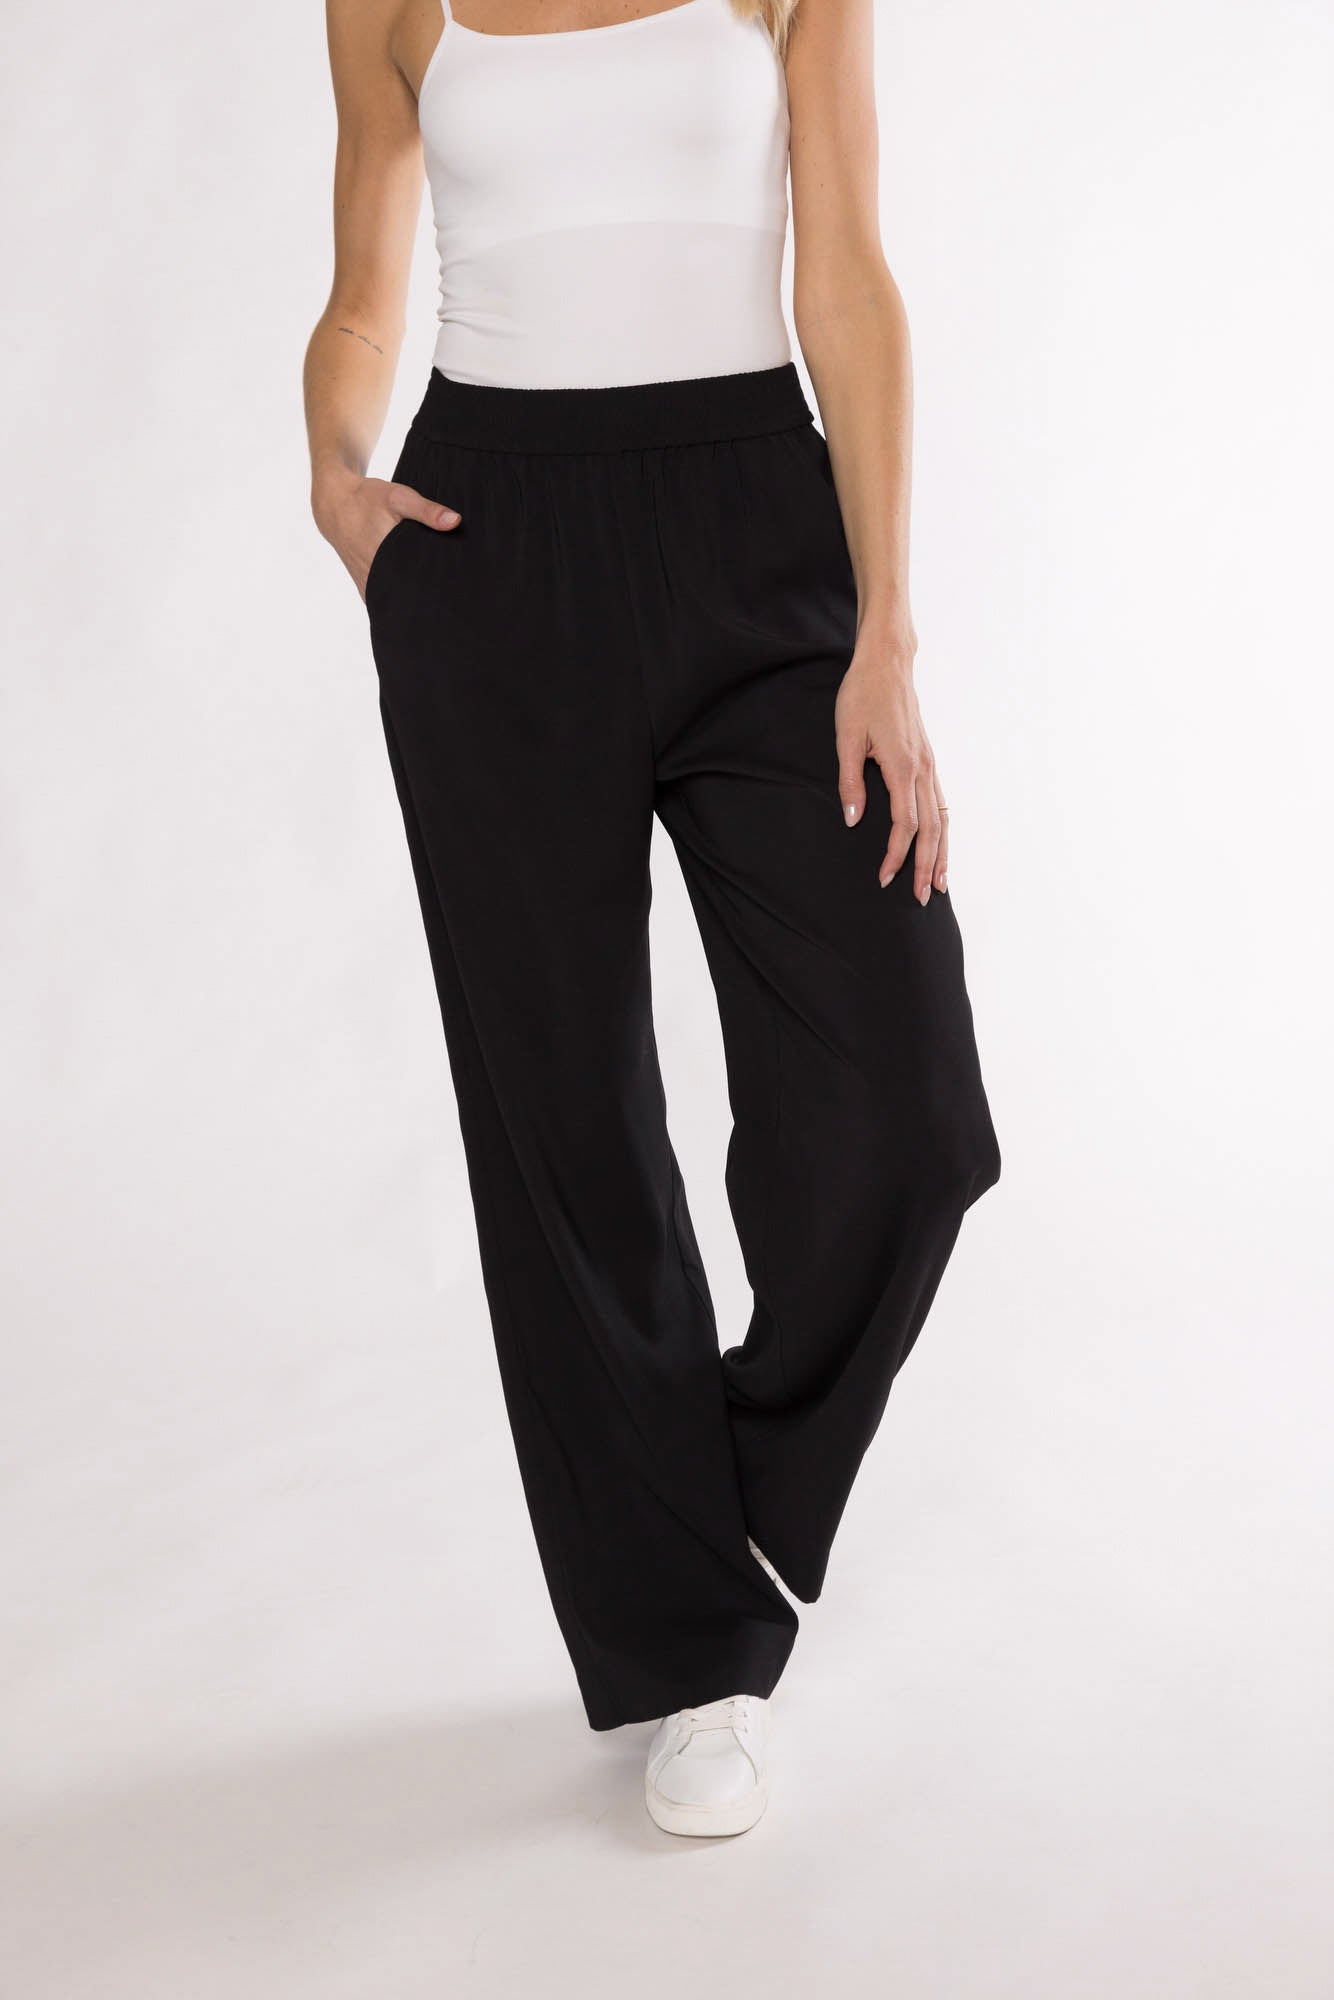 Buy Matty M women regular fit textured trouser pants black Online